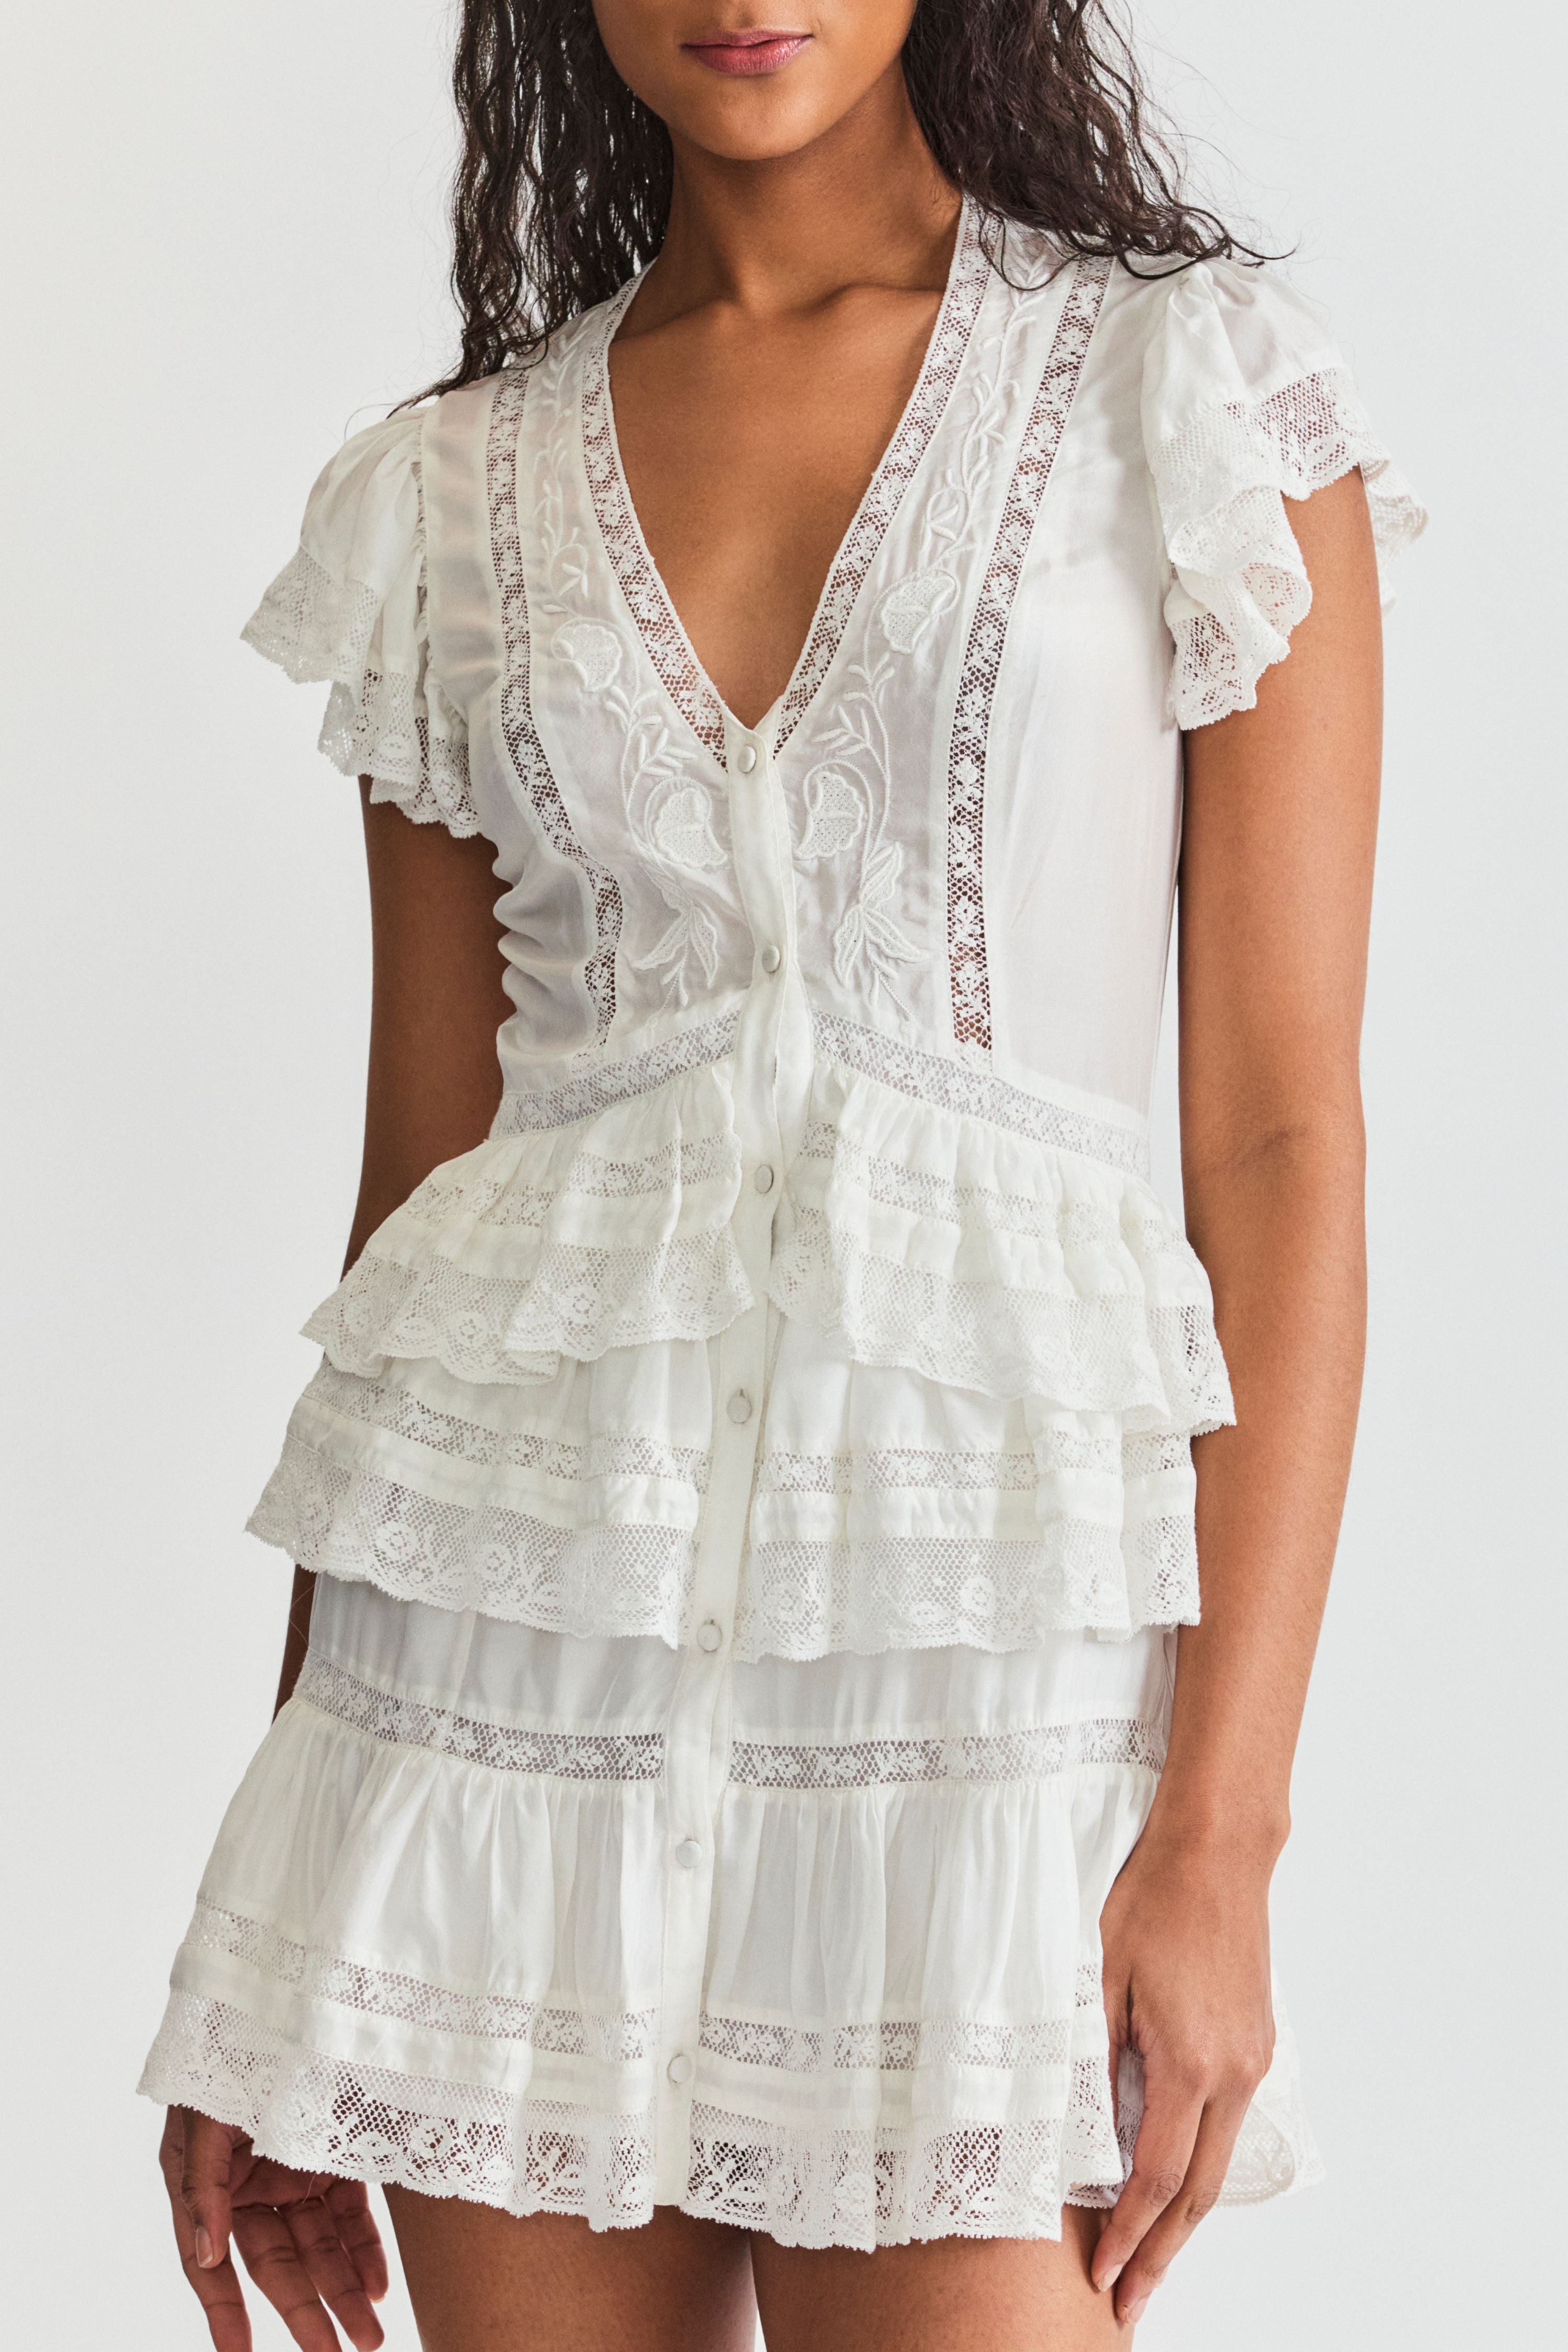 LoveShackFancy Kindler dress. Short sleeve v-neck summer short dress with flutter cap sleeves and lace detailing.